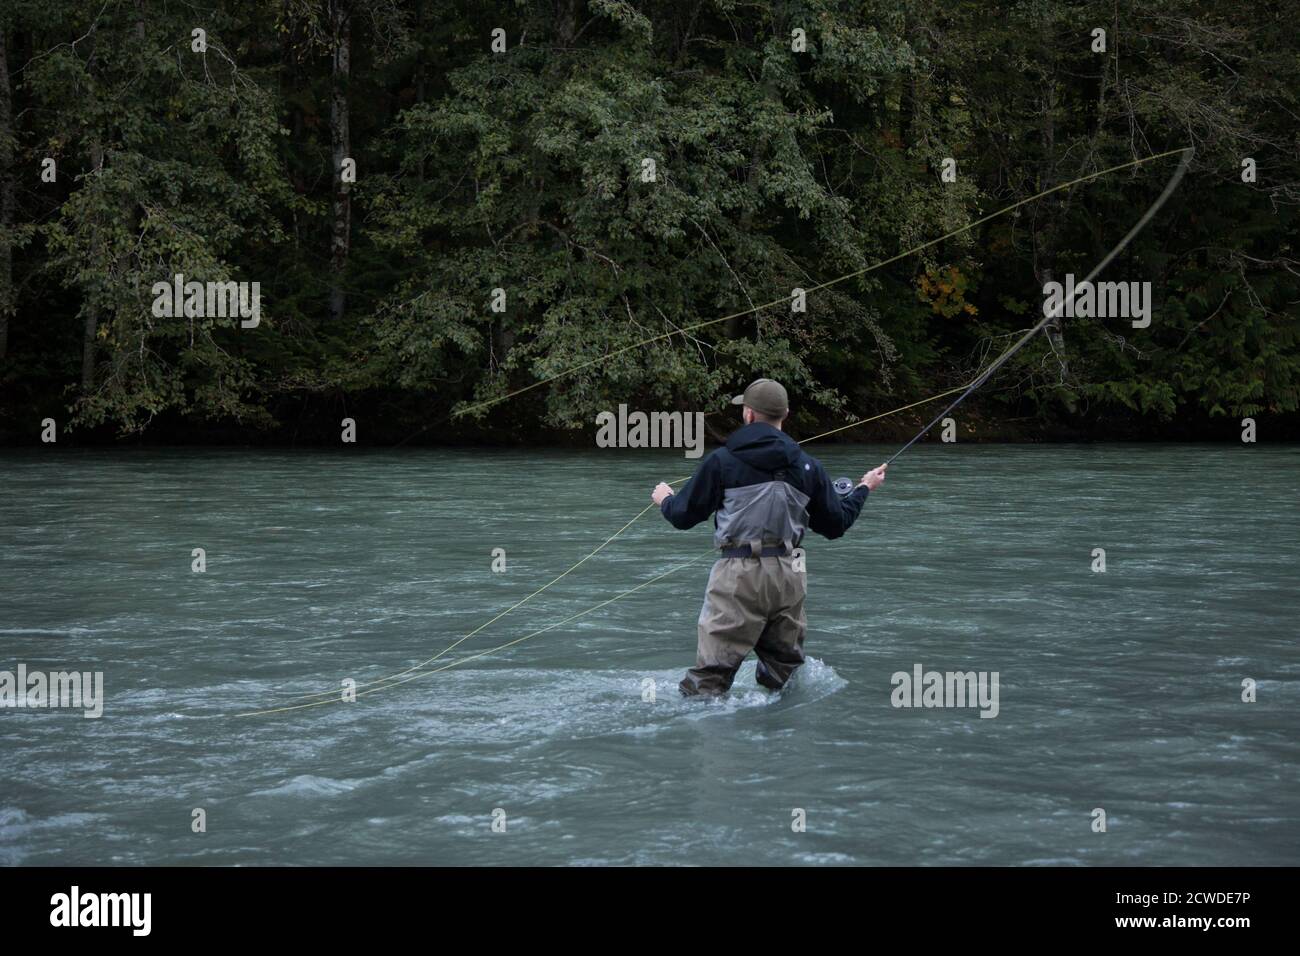 Squamish, Colombie-Britannique / Canada - 09/23/2020: Un pêcheur de mouche jette sa ligne pour un poisson sur la rivière Squamish Banque D'Images